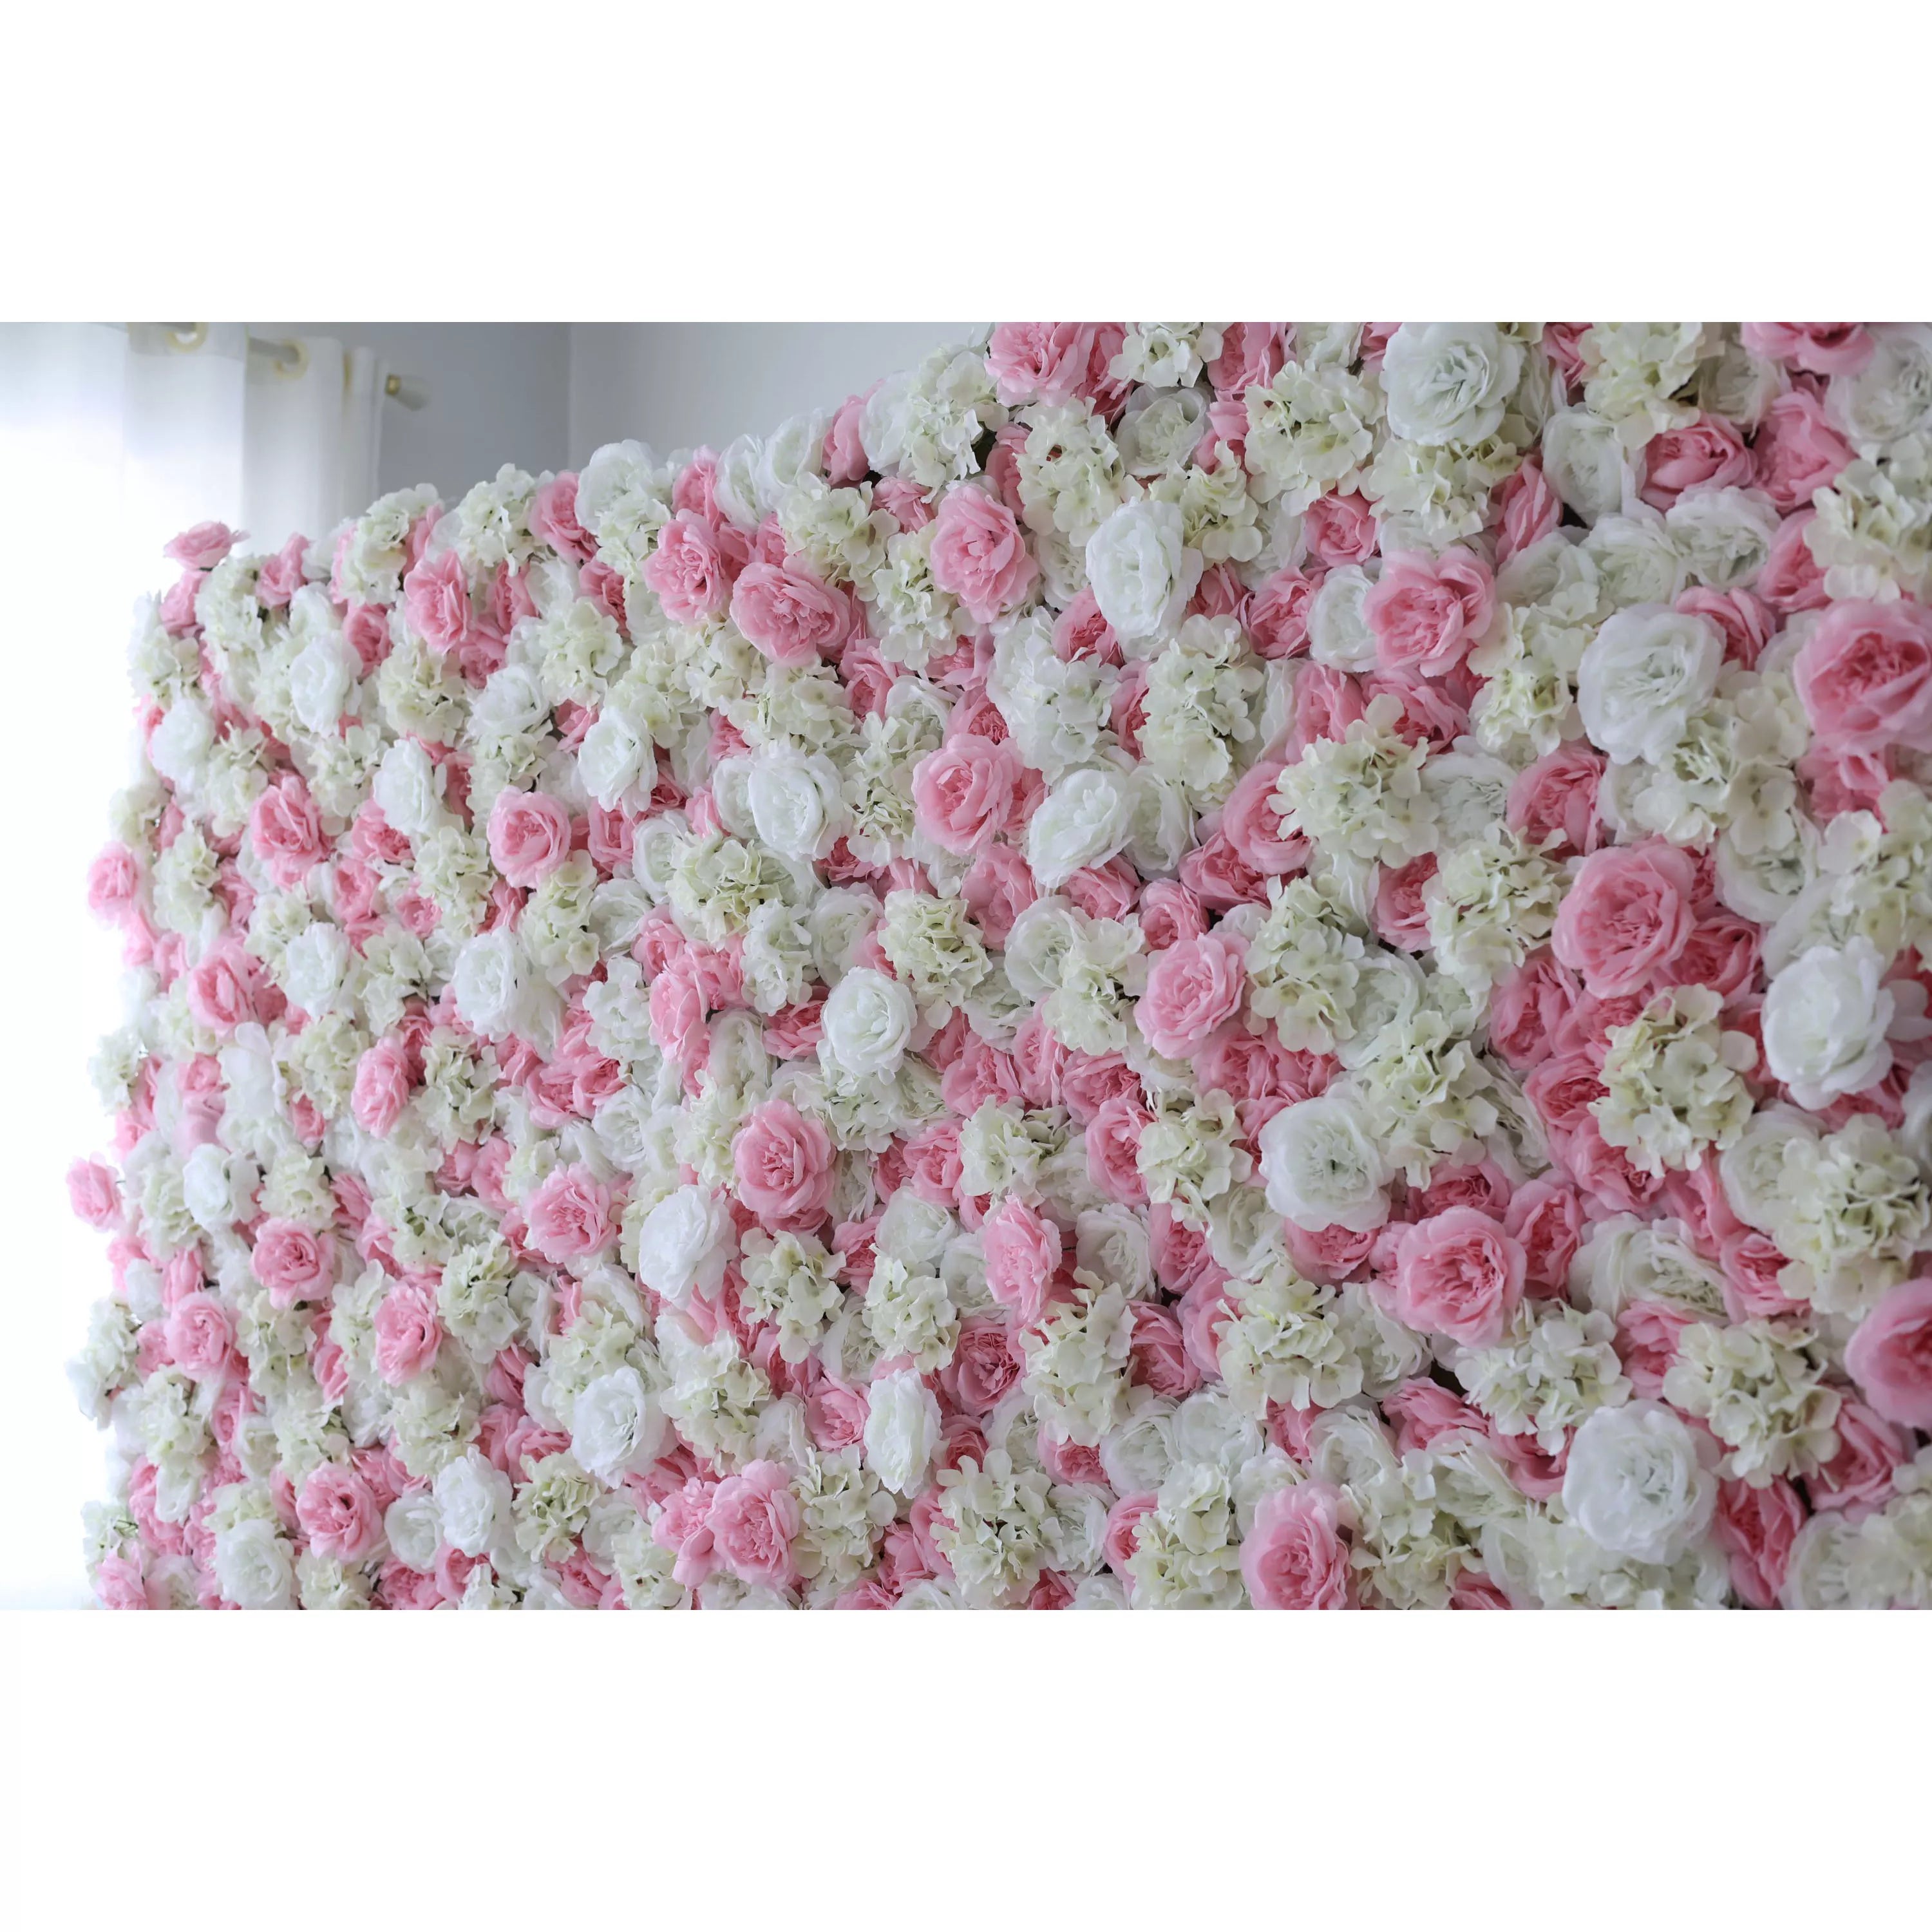 Valar Flowers Roll Up Tissu Artificiel Opéra Mauve Rose et Blanc Fleur Mur Toile de Fond de Mariage, Décor de Fête Florale, Photographie d'événement-VF-025-2 